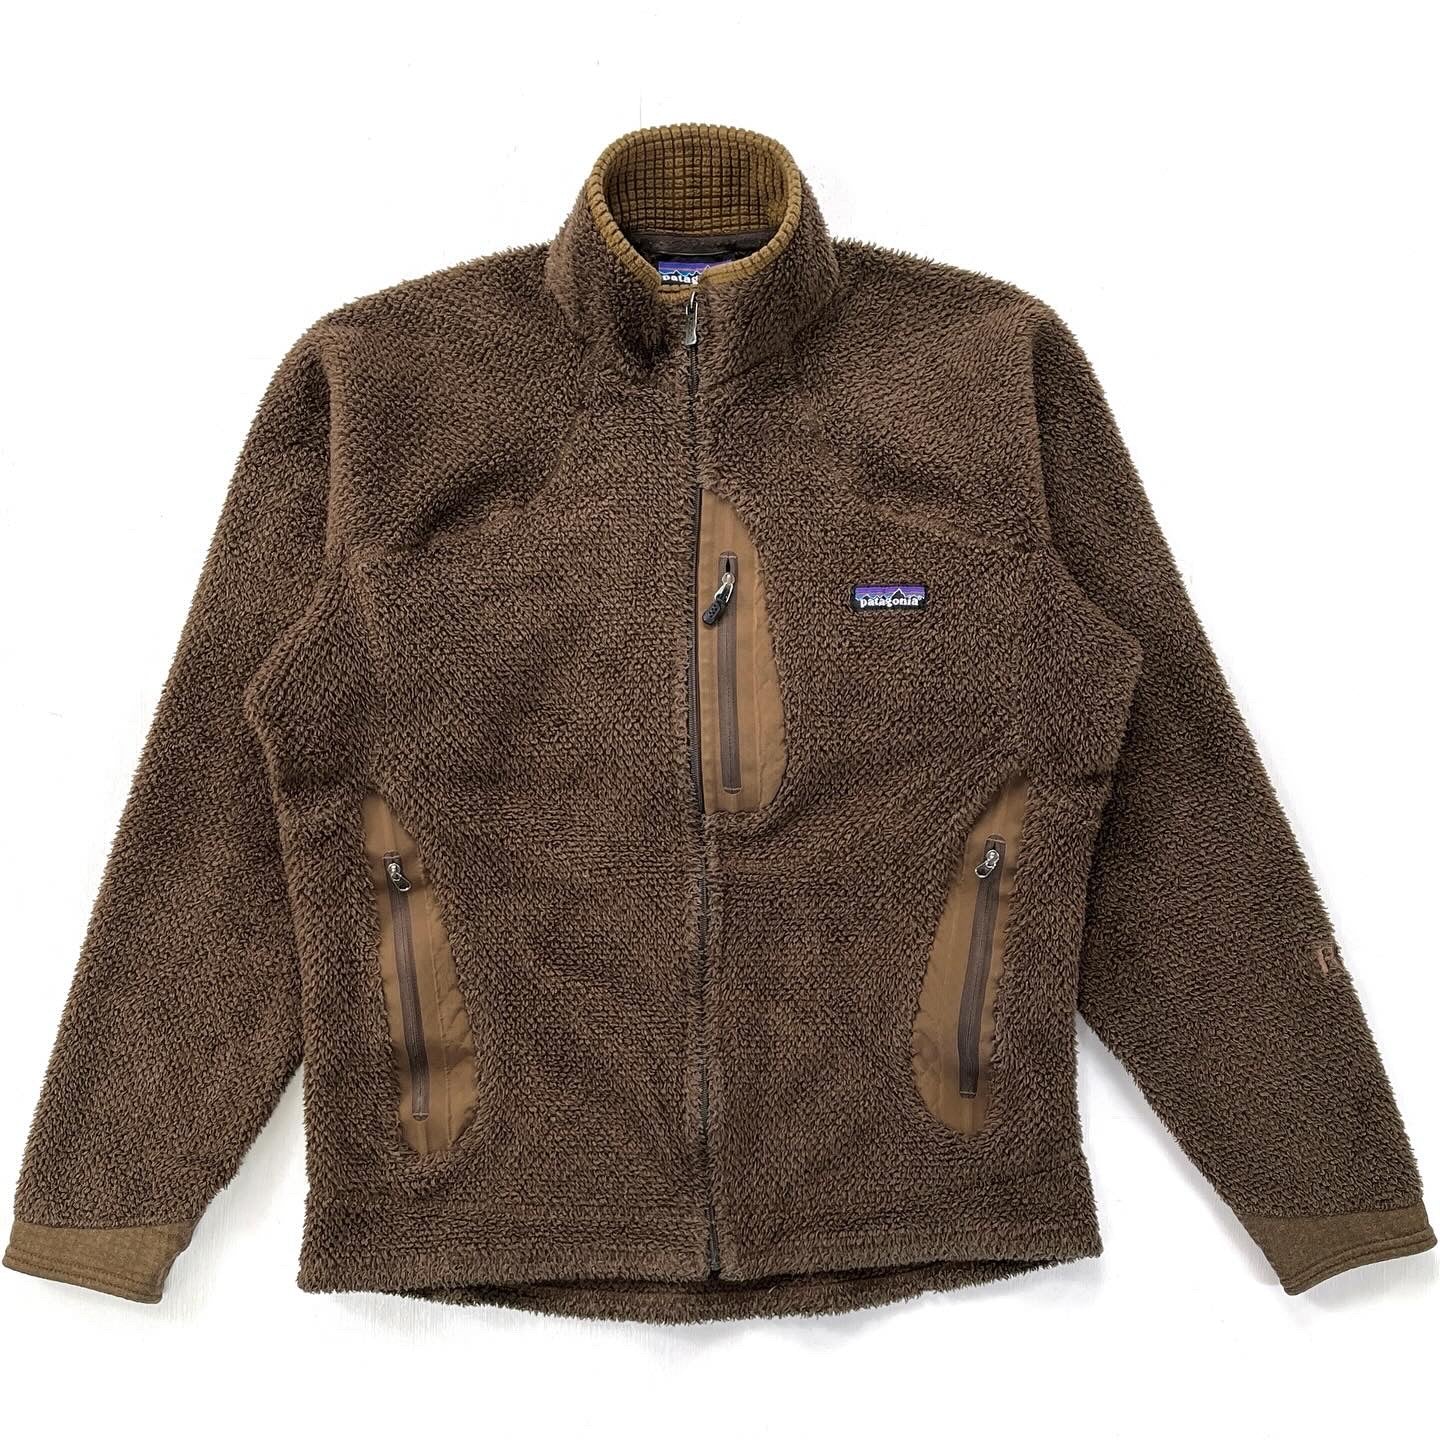 2010 Patagonia R2 High-Pile Regulator Fleece Jacket (S/M)